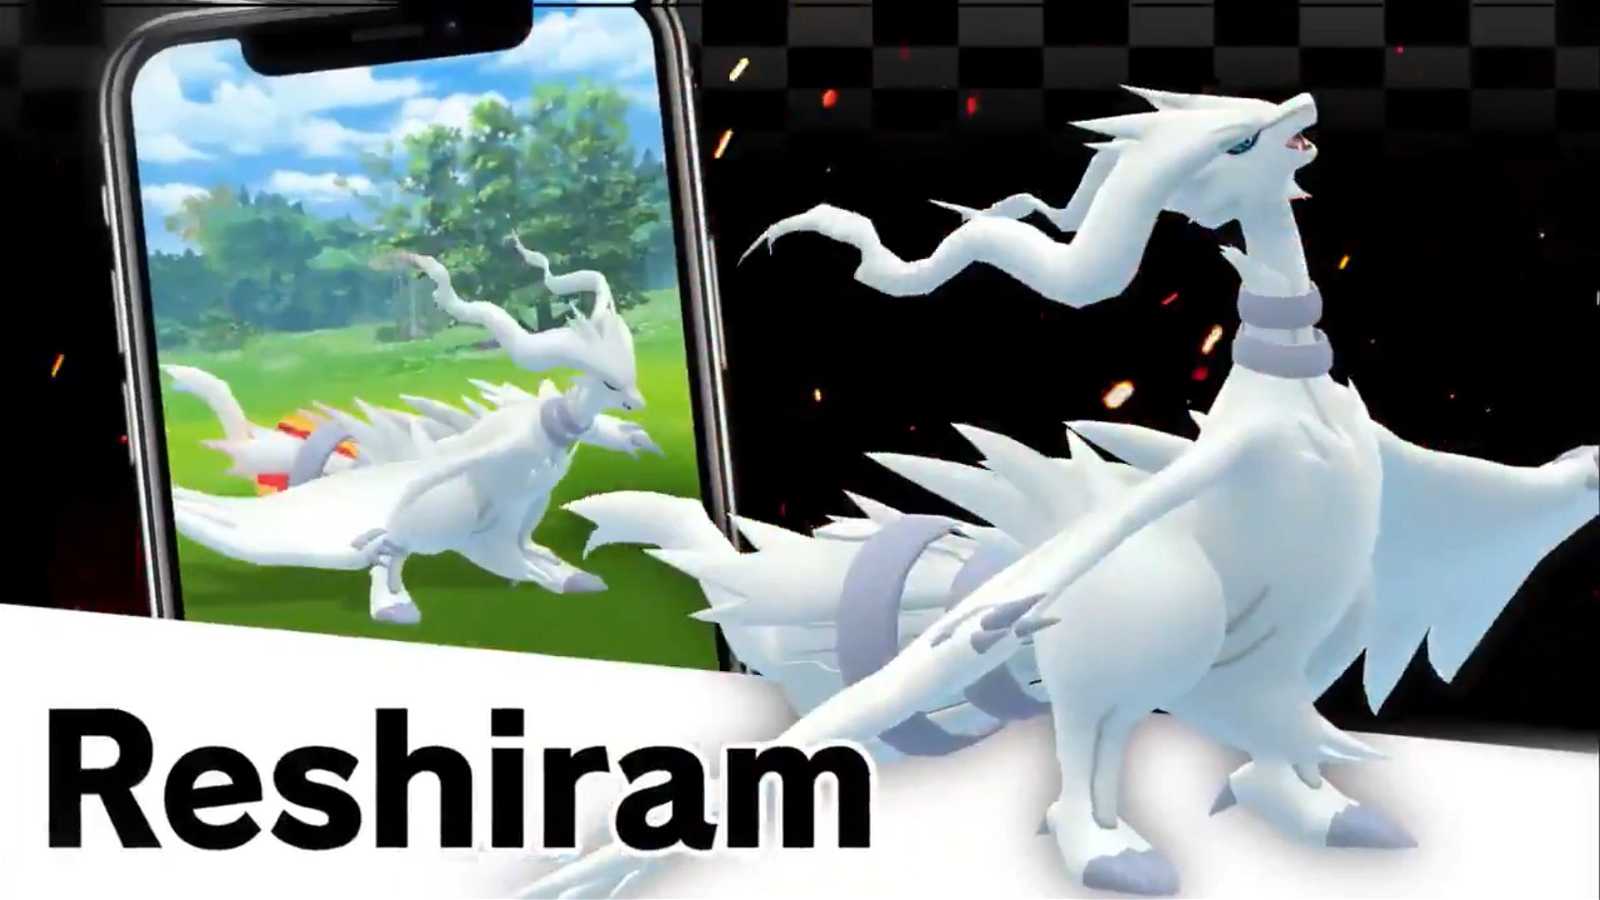 Best movesets for Reshiram in Pokémon Go